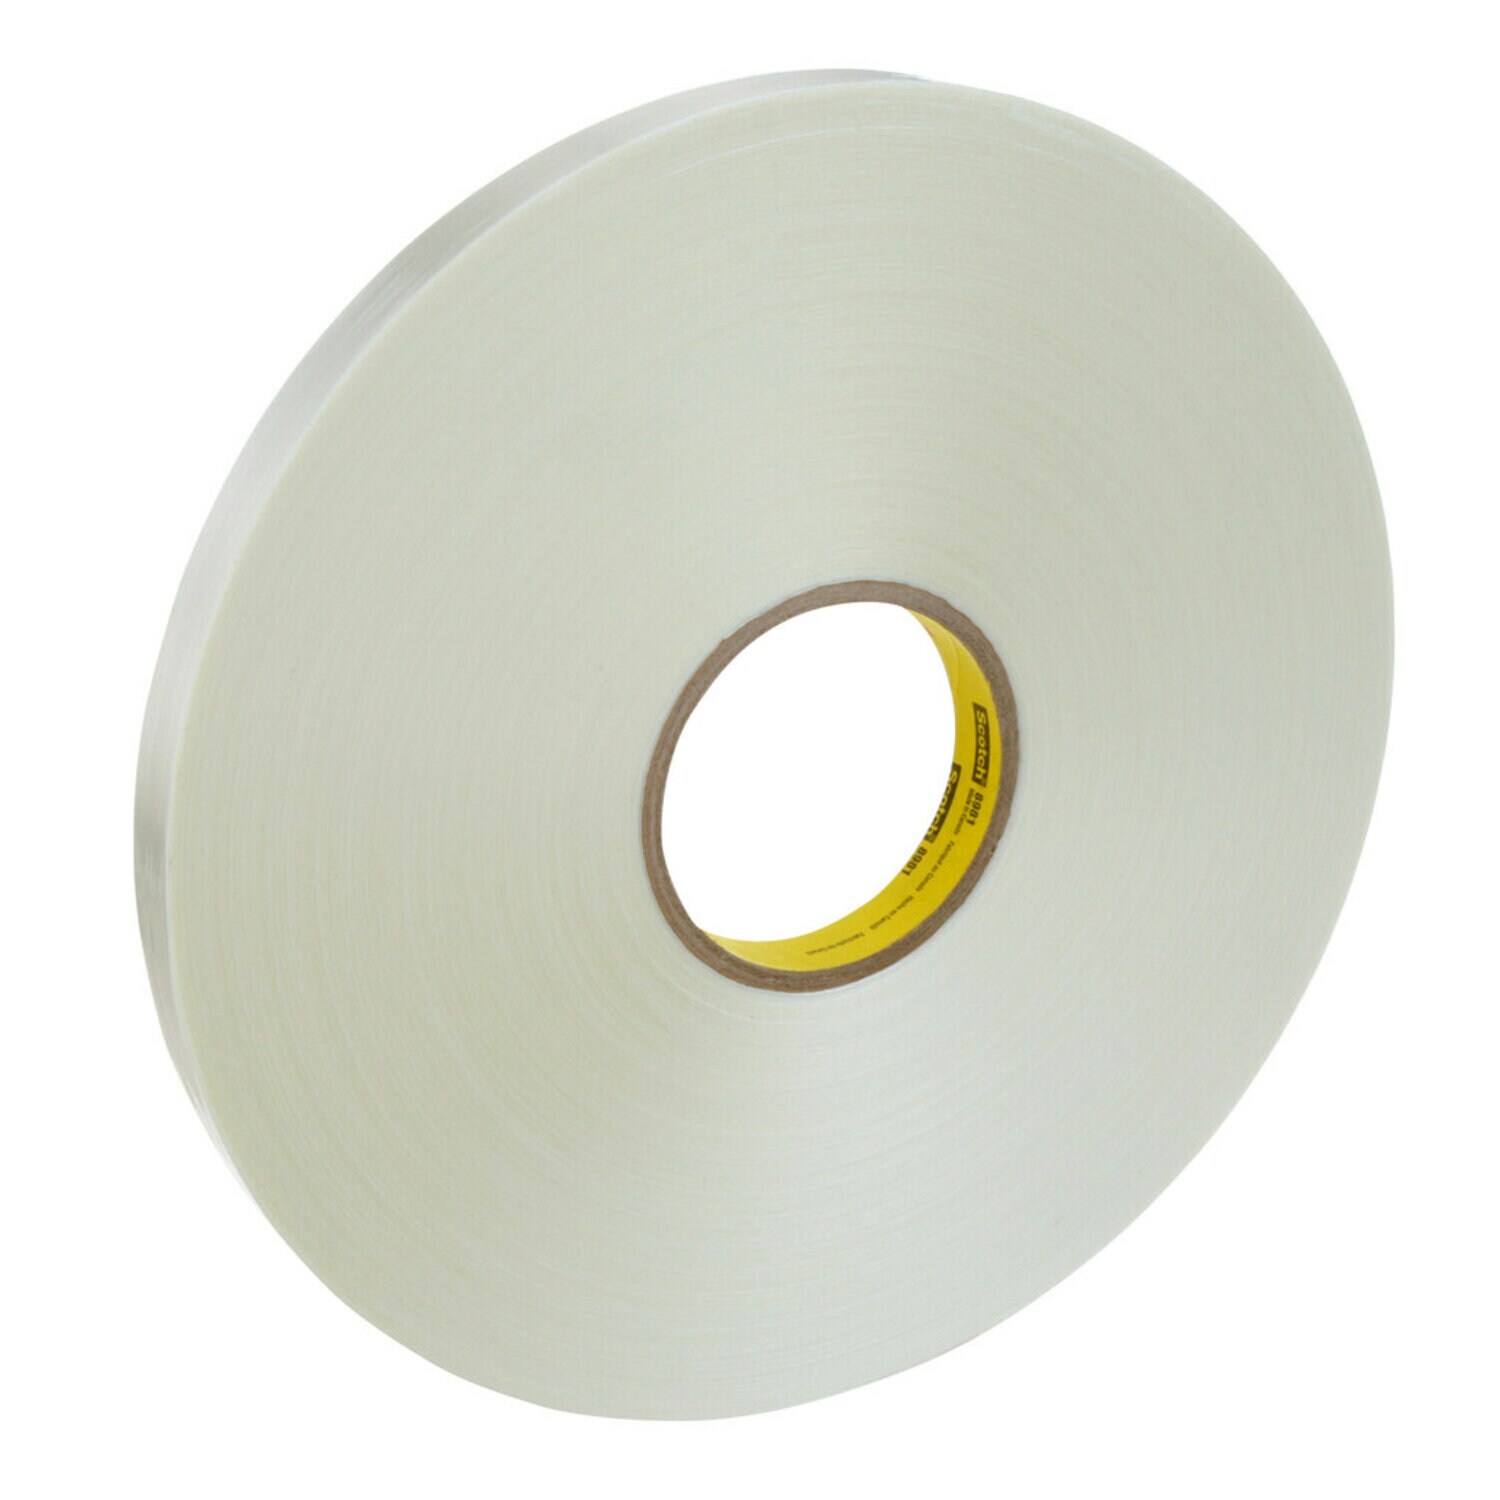 7000123841 - Scotch Filament Tape 8981, Clear, 18 mm x 330 m, 6.6 mil, 8 rolls per
case